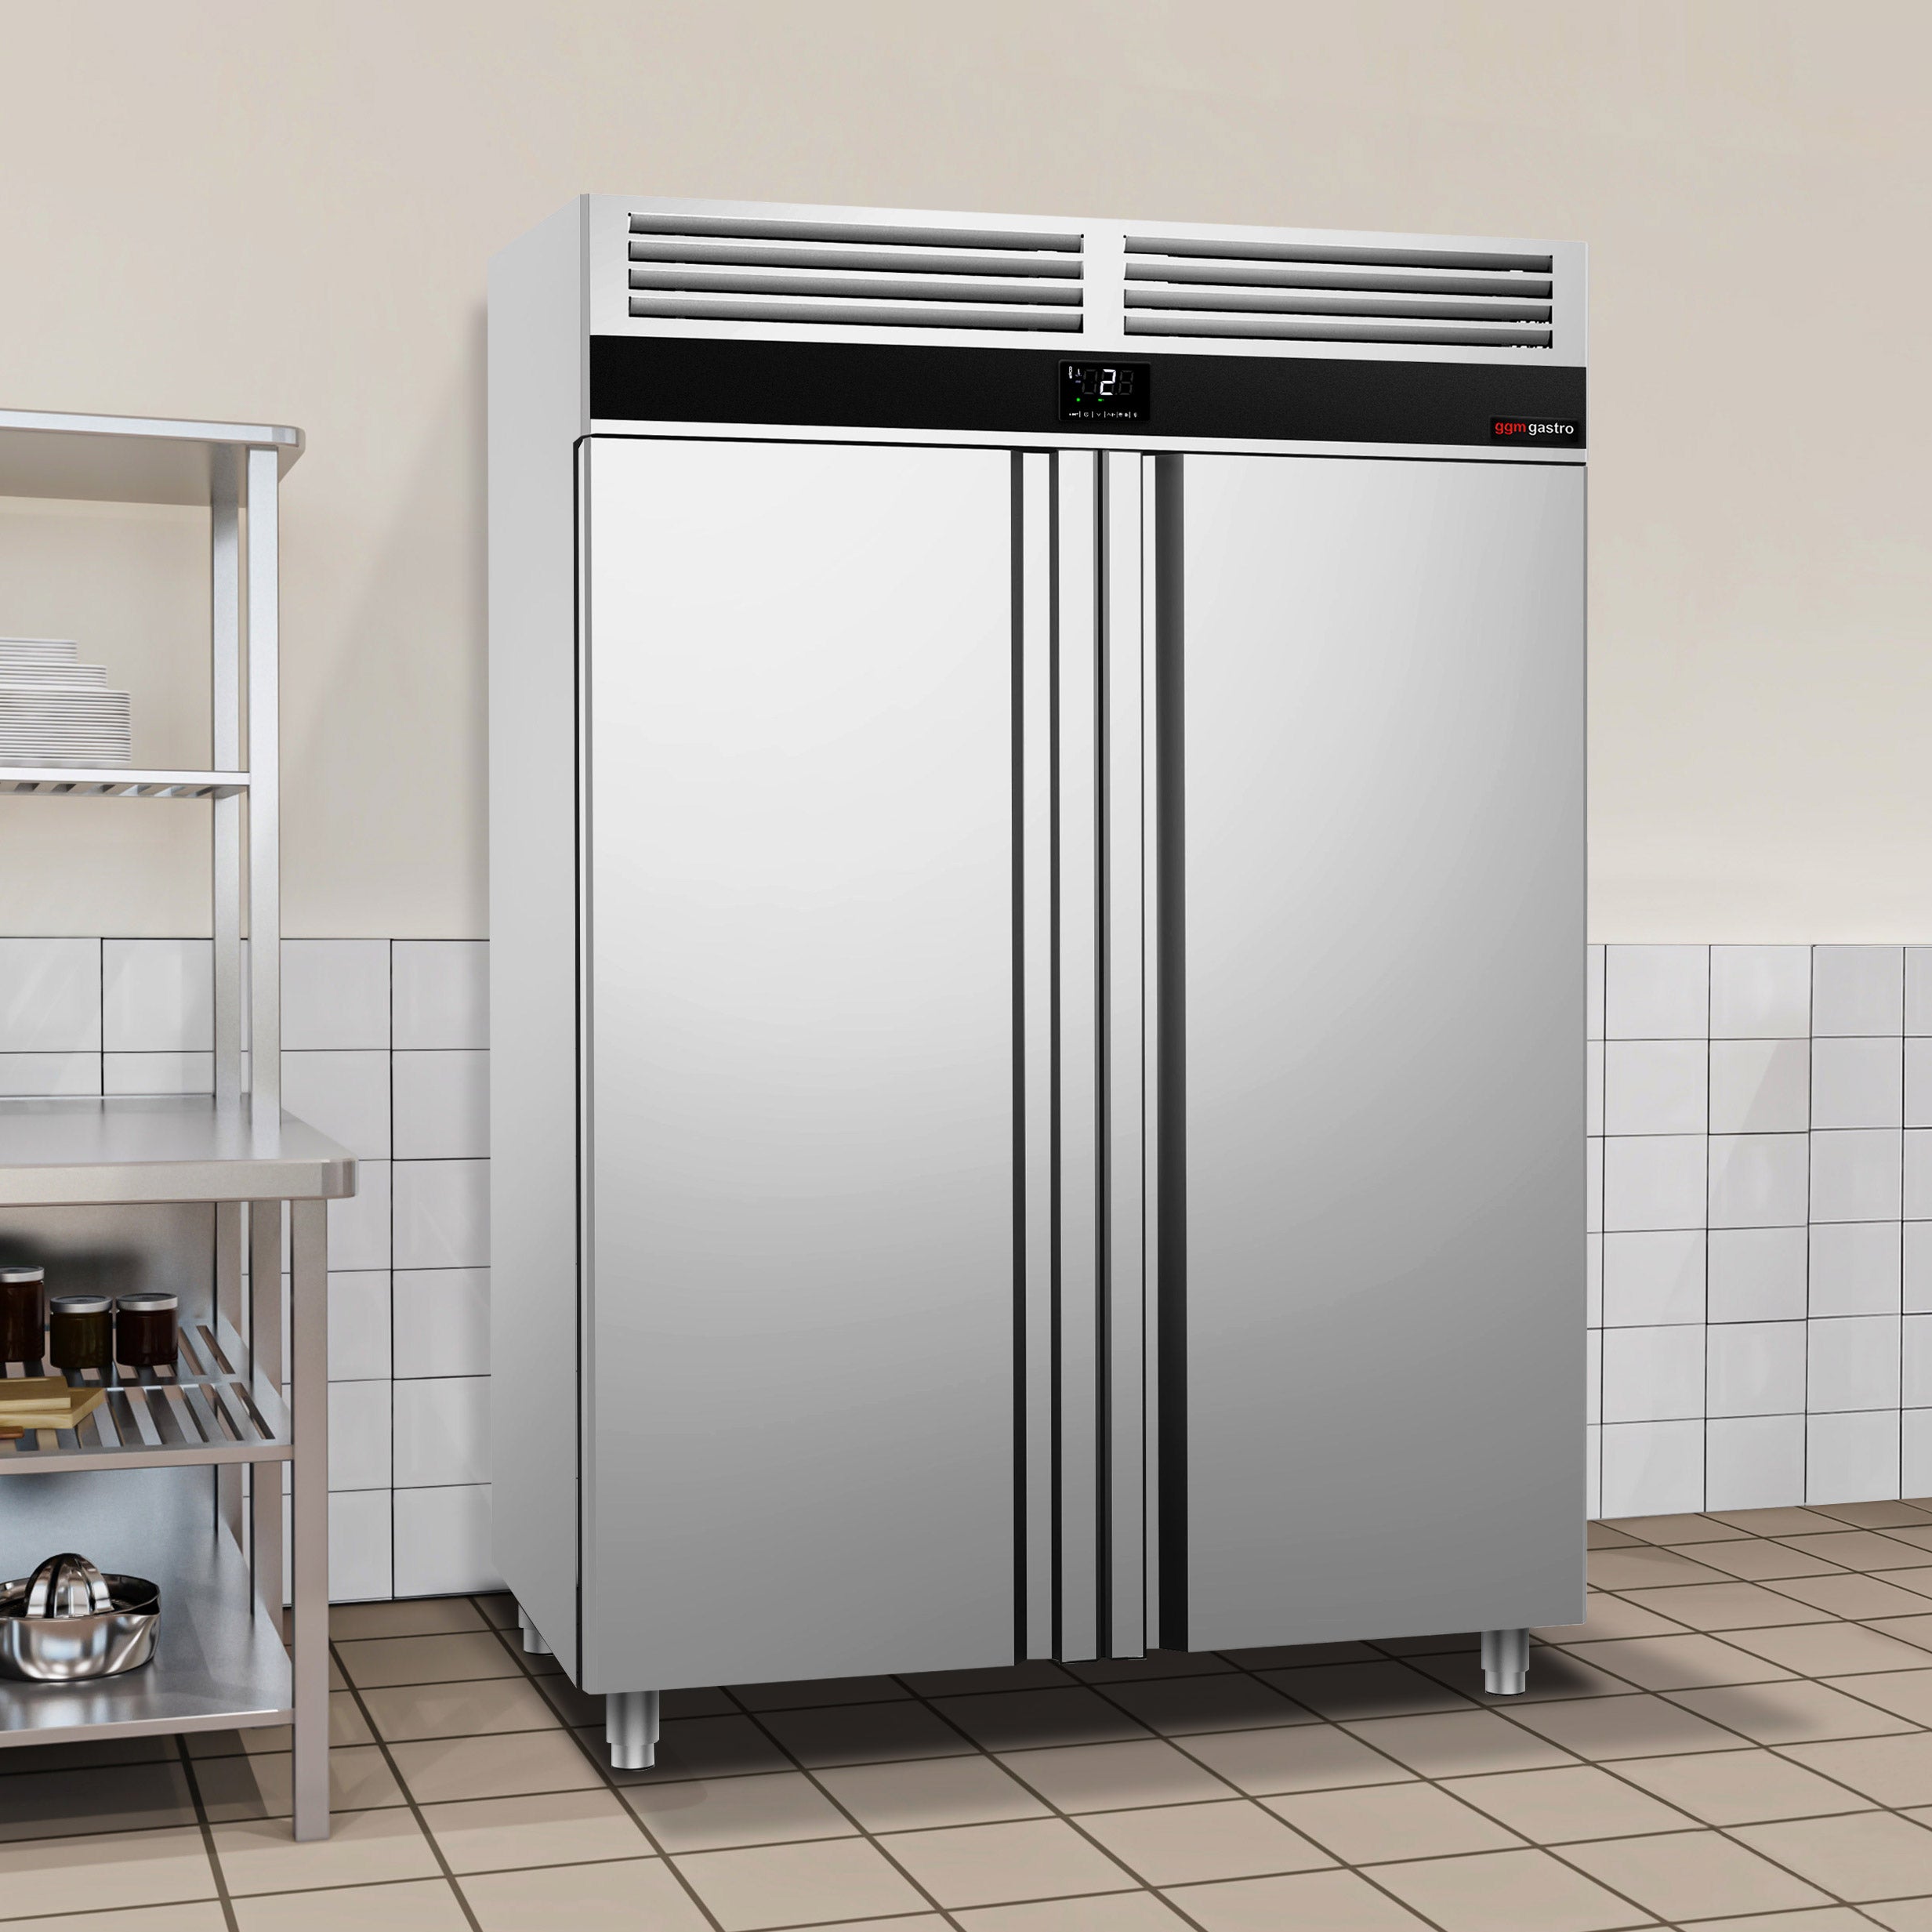 Хладилник - 1,41 х 0,82 м - 1400 литра - с 2 врати от неръждаема стомана